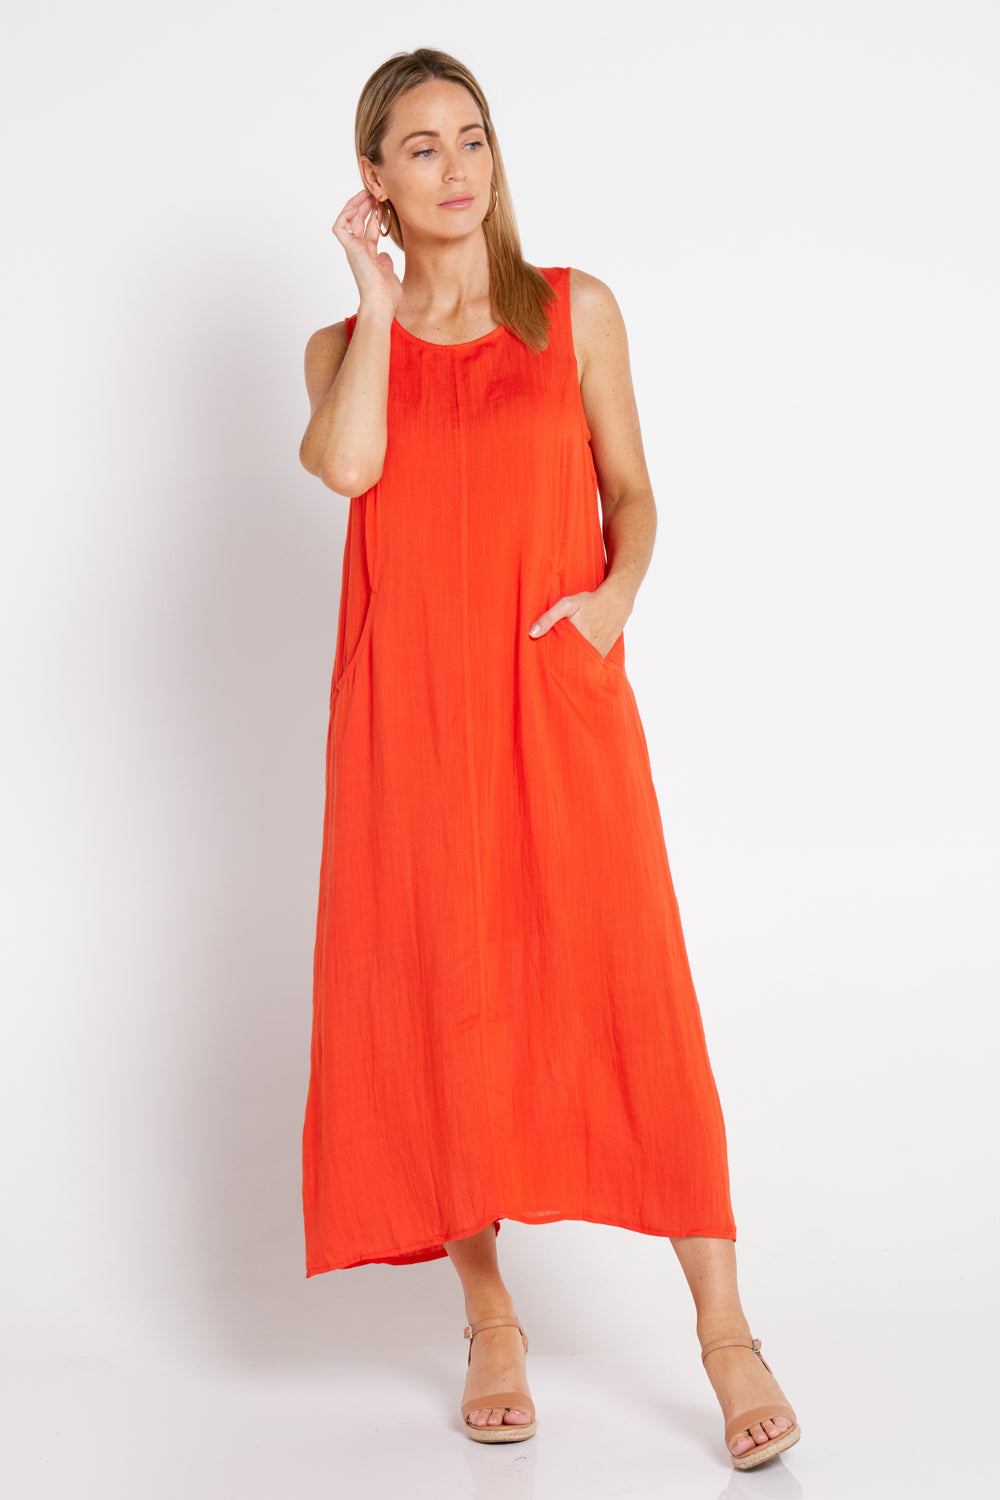 Breson Linen Blend Dress - Orange